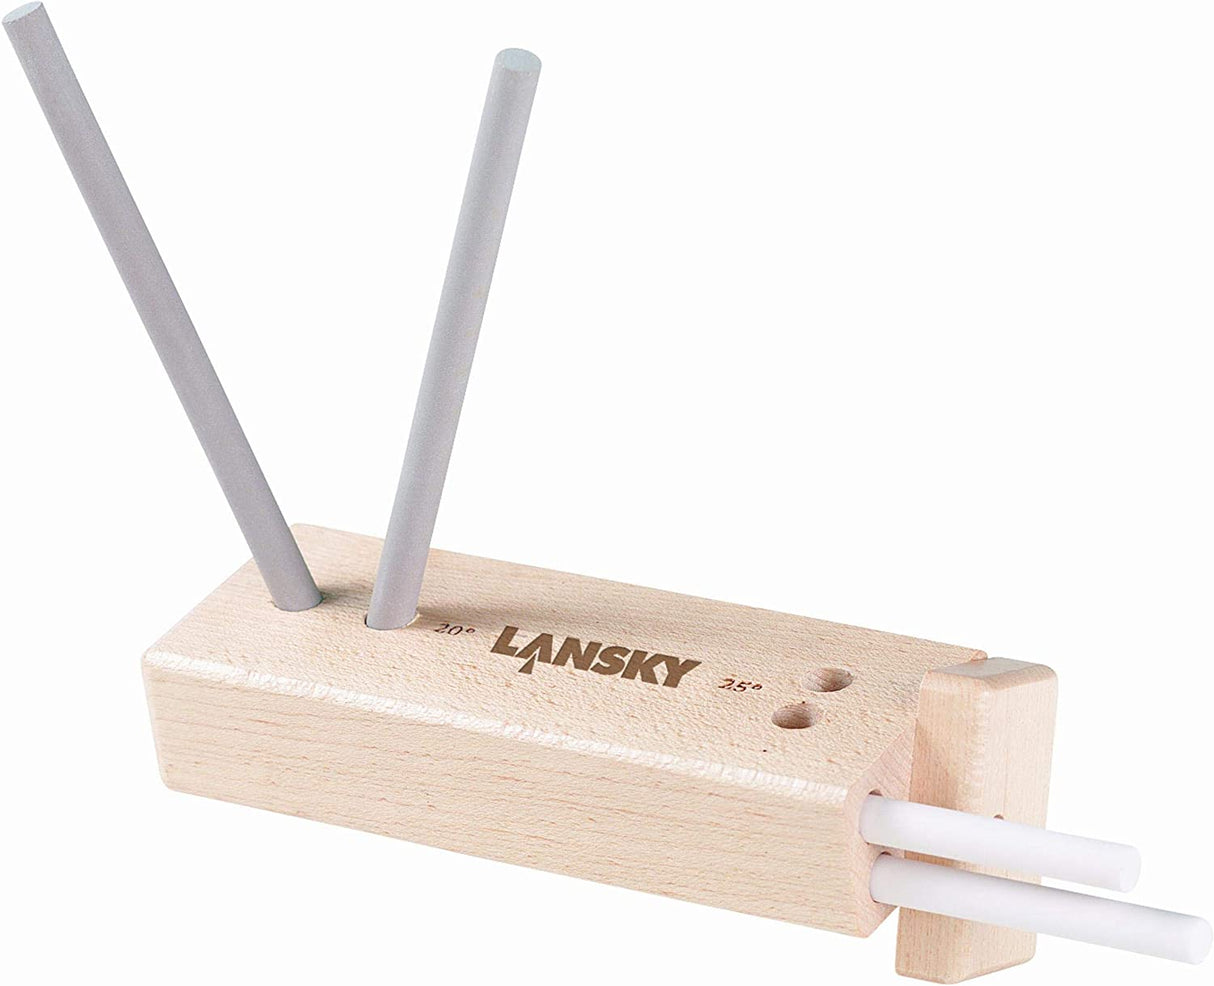 Lansky 4-Rod Turn Box